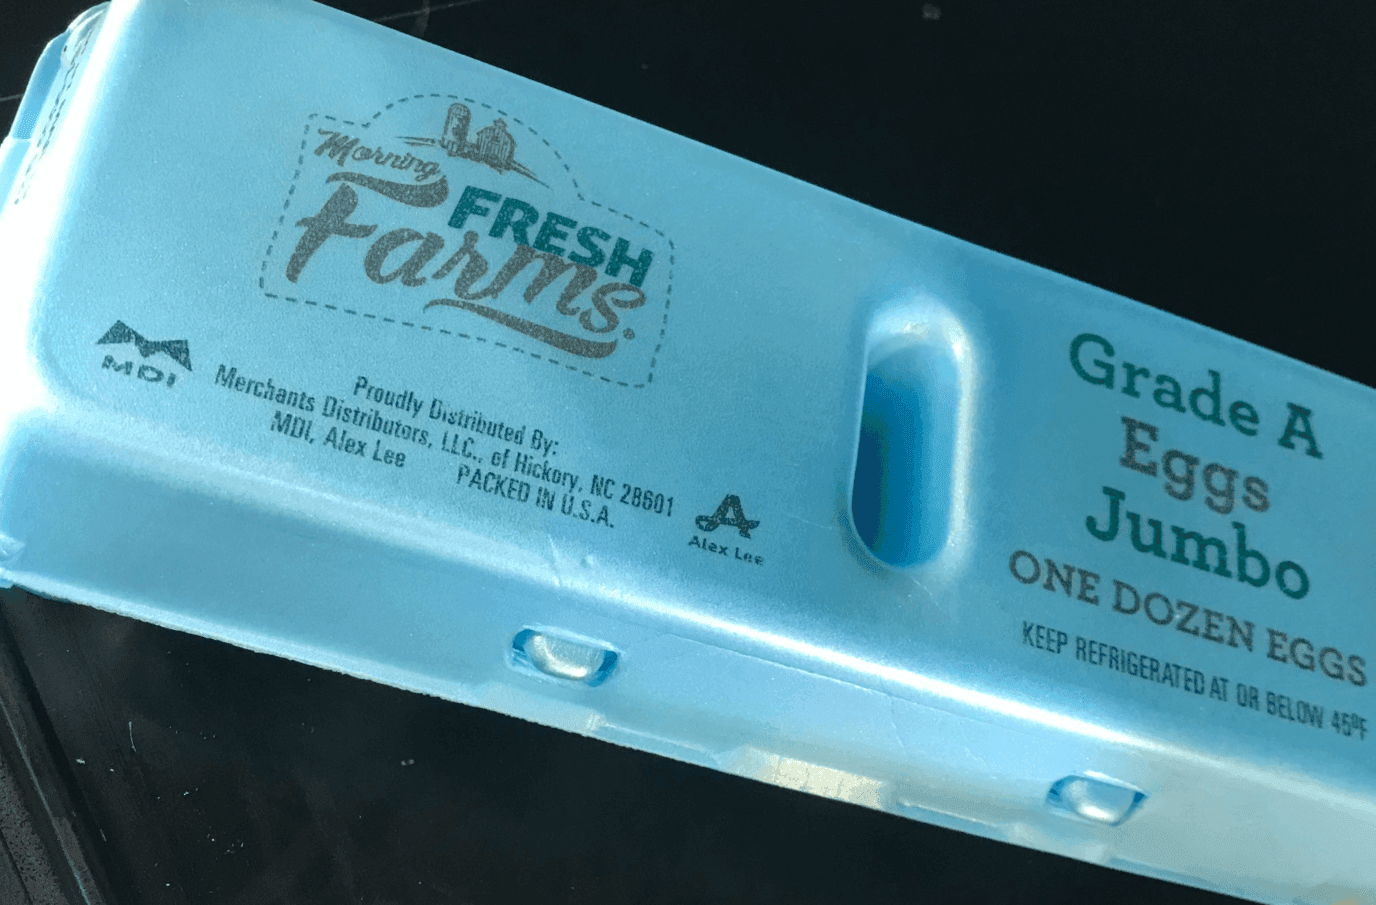 Morning Fresh Farms - Eggs Jumbo Grade A